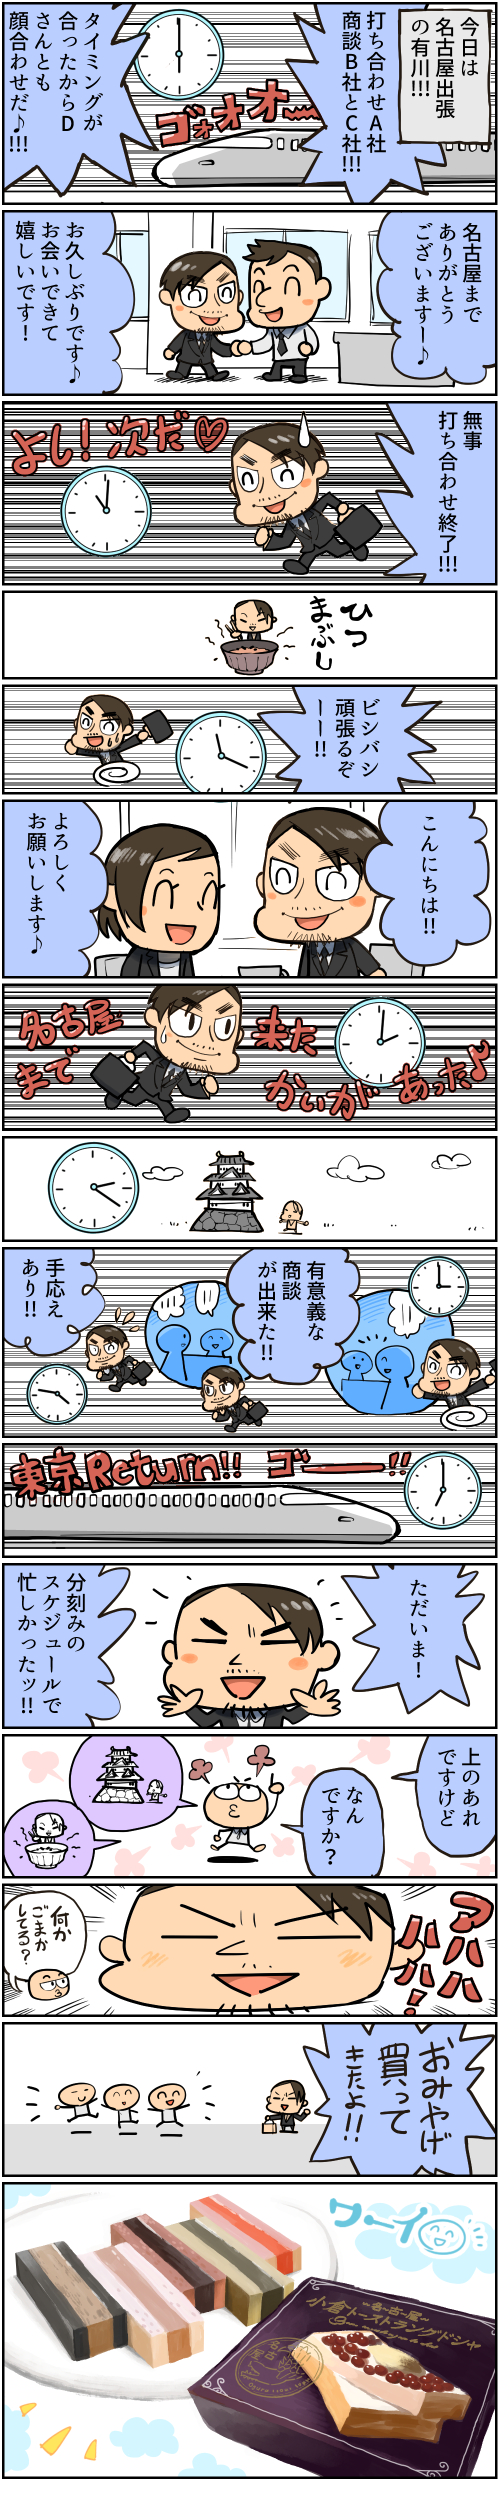 weekly_comic_20_nagoya.jpg